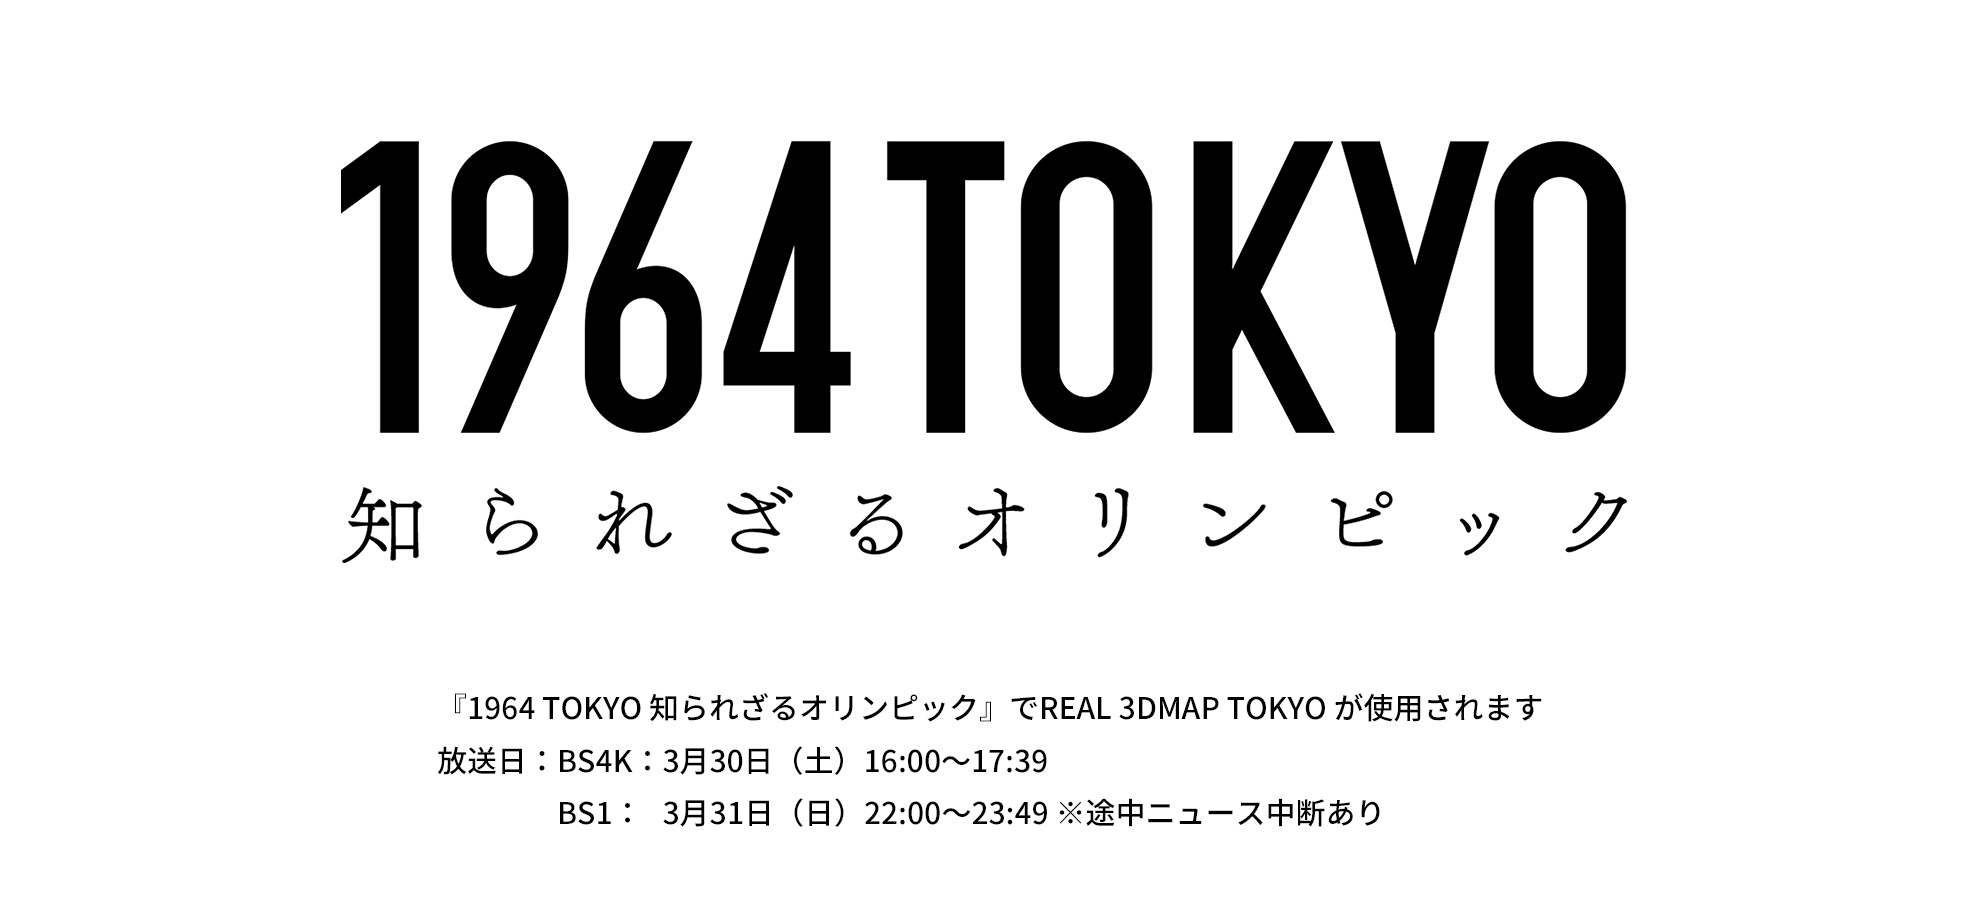 『1964 TOKYO 知られざるオリンピック』で REAL 3DMAP TOKYO が使用されます 終了しました